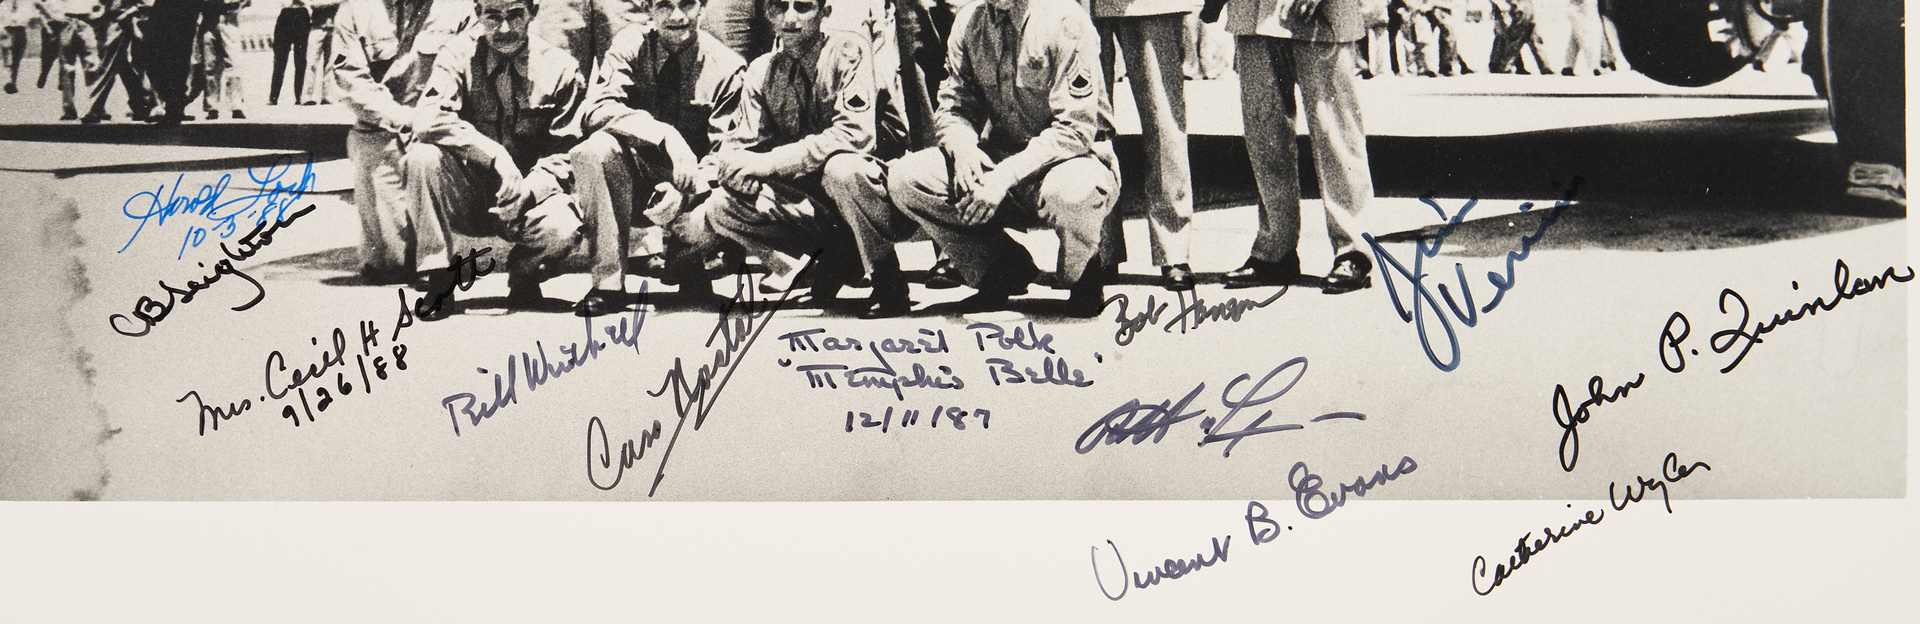 Lot 775: Crew of Memphis Belle Autographed Photograph